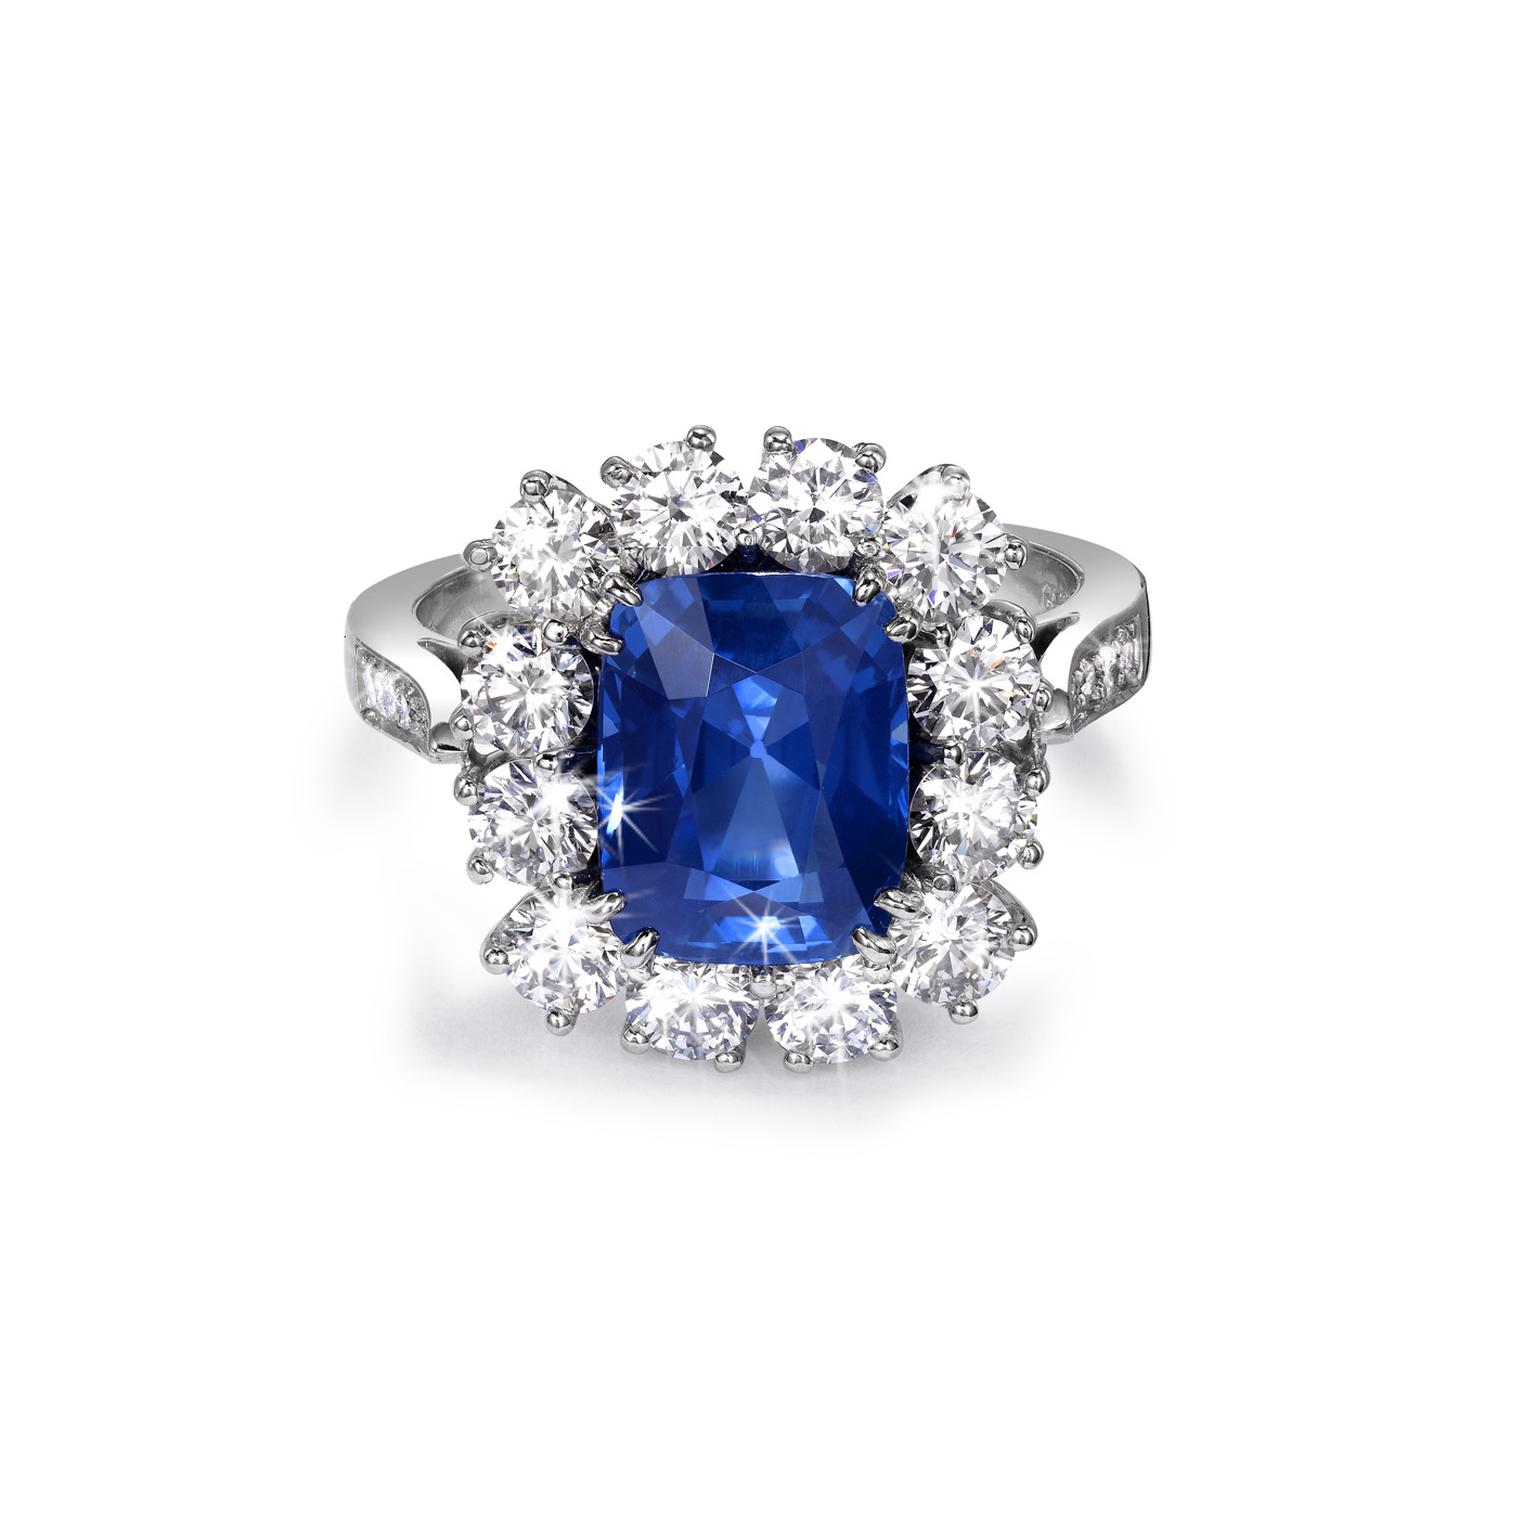 Pragnell's Kashmir Sapphire ring